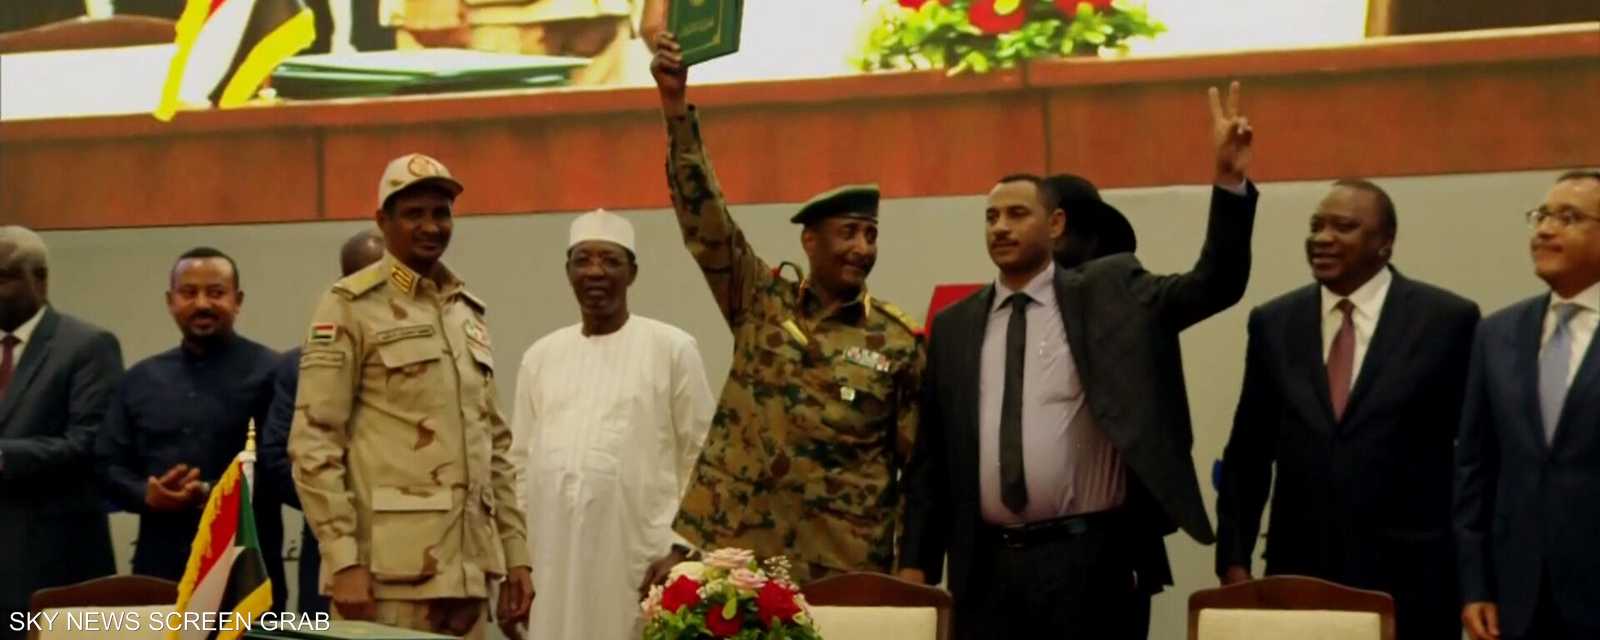 17 أغسطس 2019 يوم لن ينساه السودان أو السودانيون